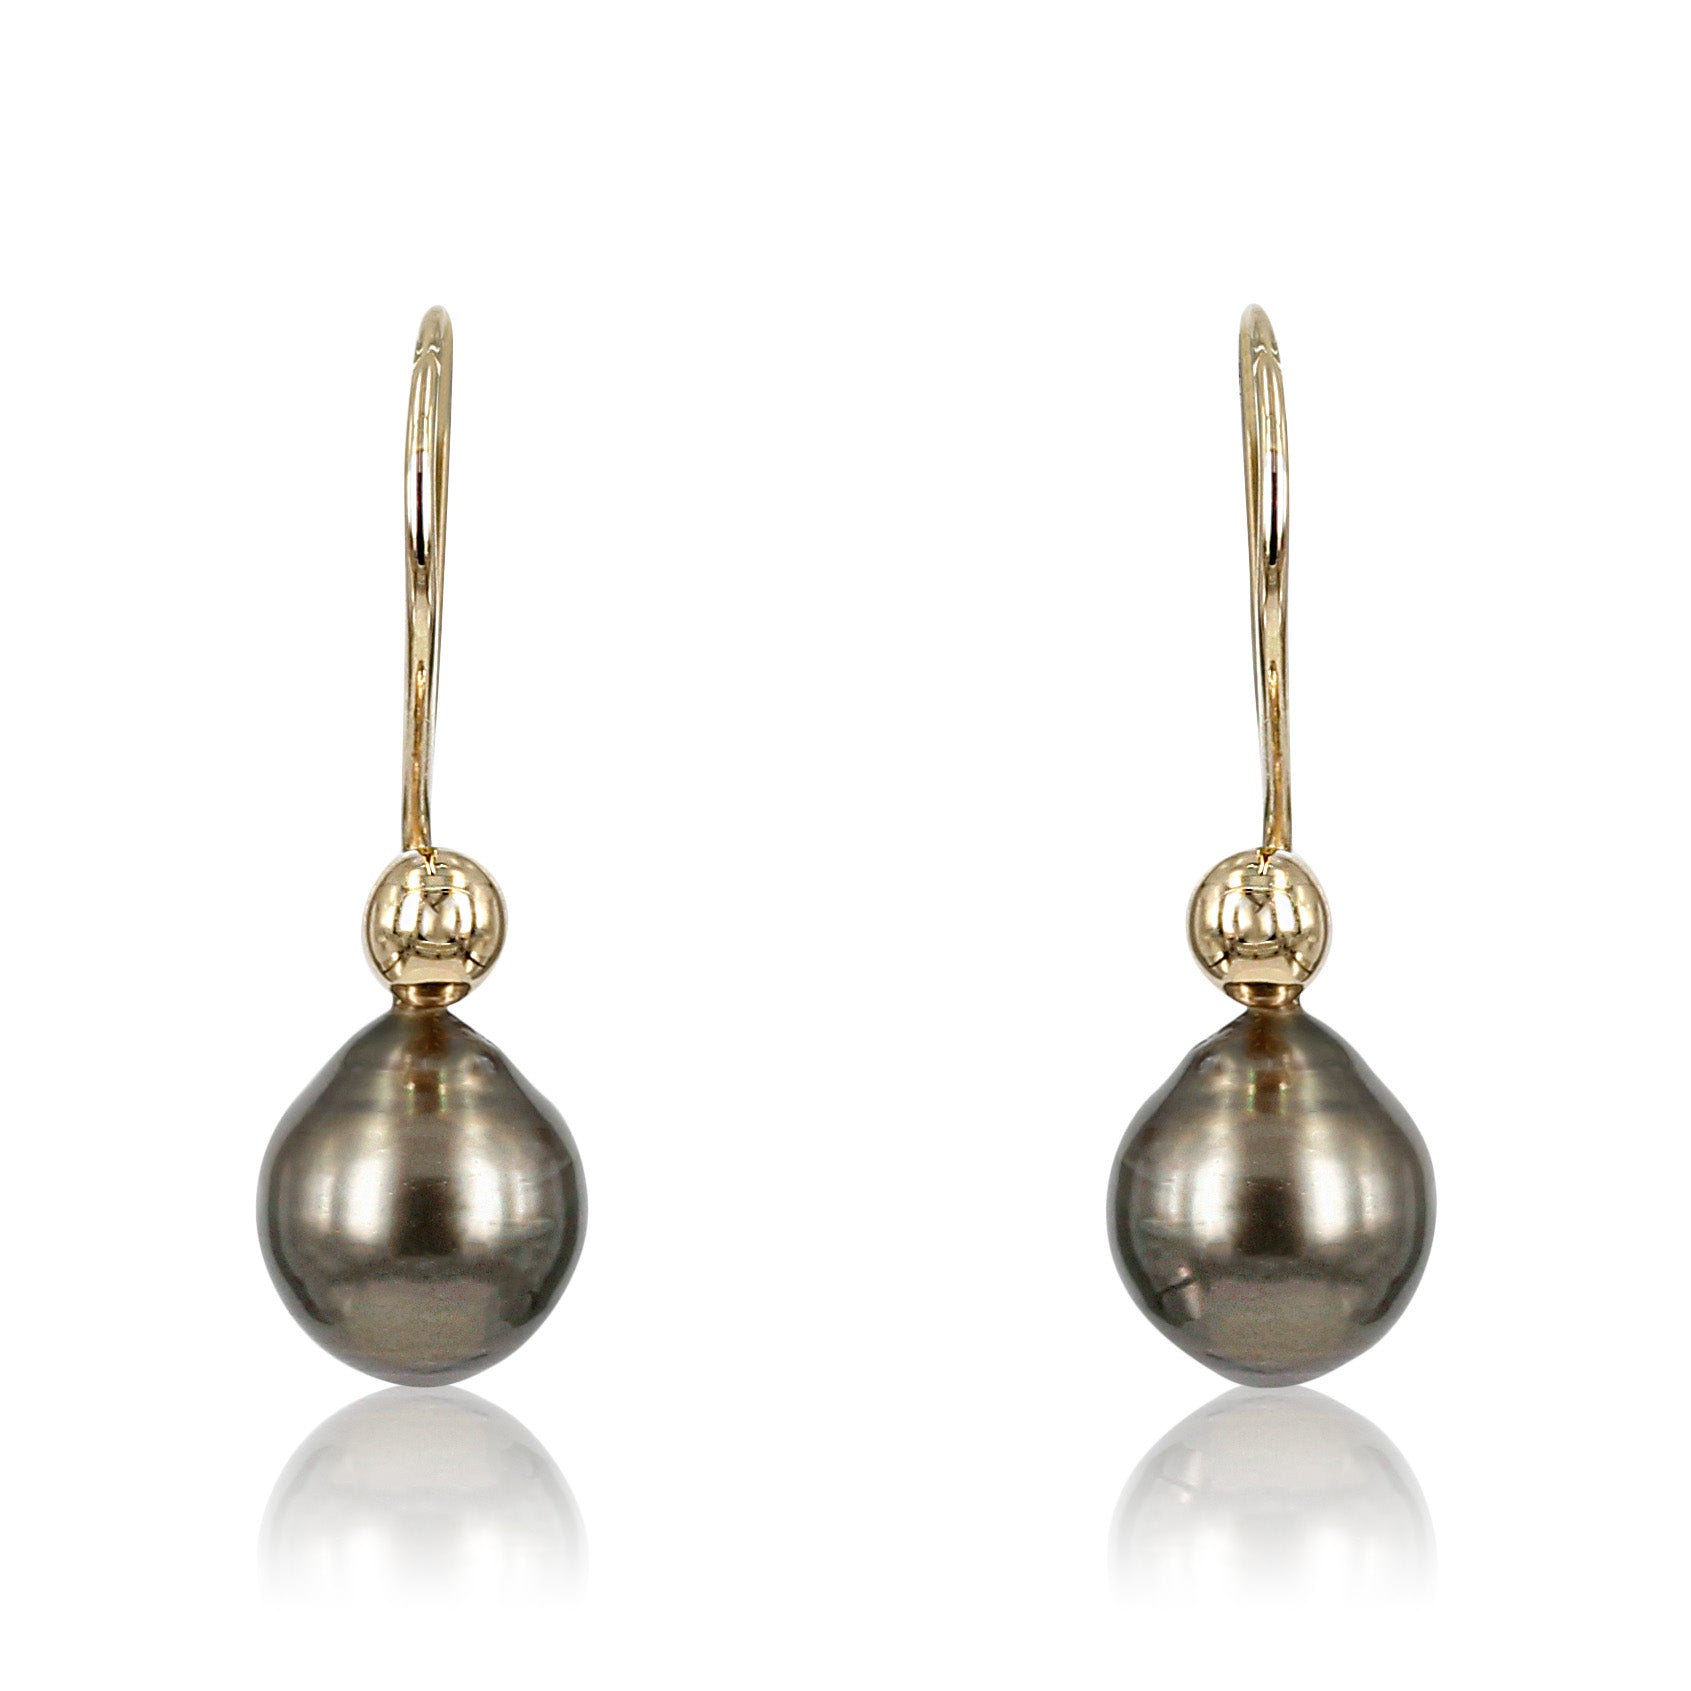 Bubbles - 14 kt Guld ørering med aftagelig perle  14 kt. guld ørekroge, øreringene kan bærers med og uden perler og de kan vælges efter ønske, her får du mulighed for flere øreringe i en, da perlerne kan skiftes.